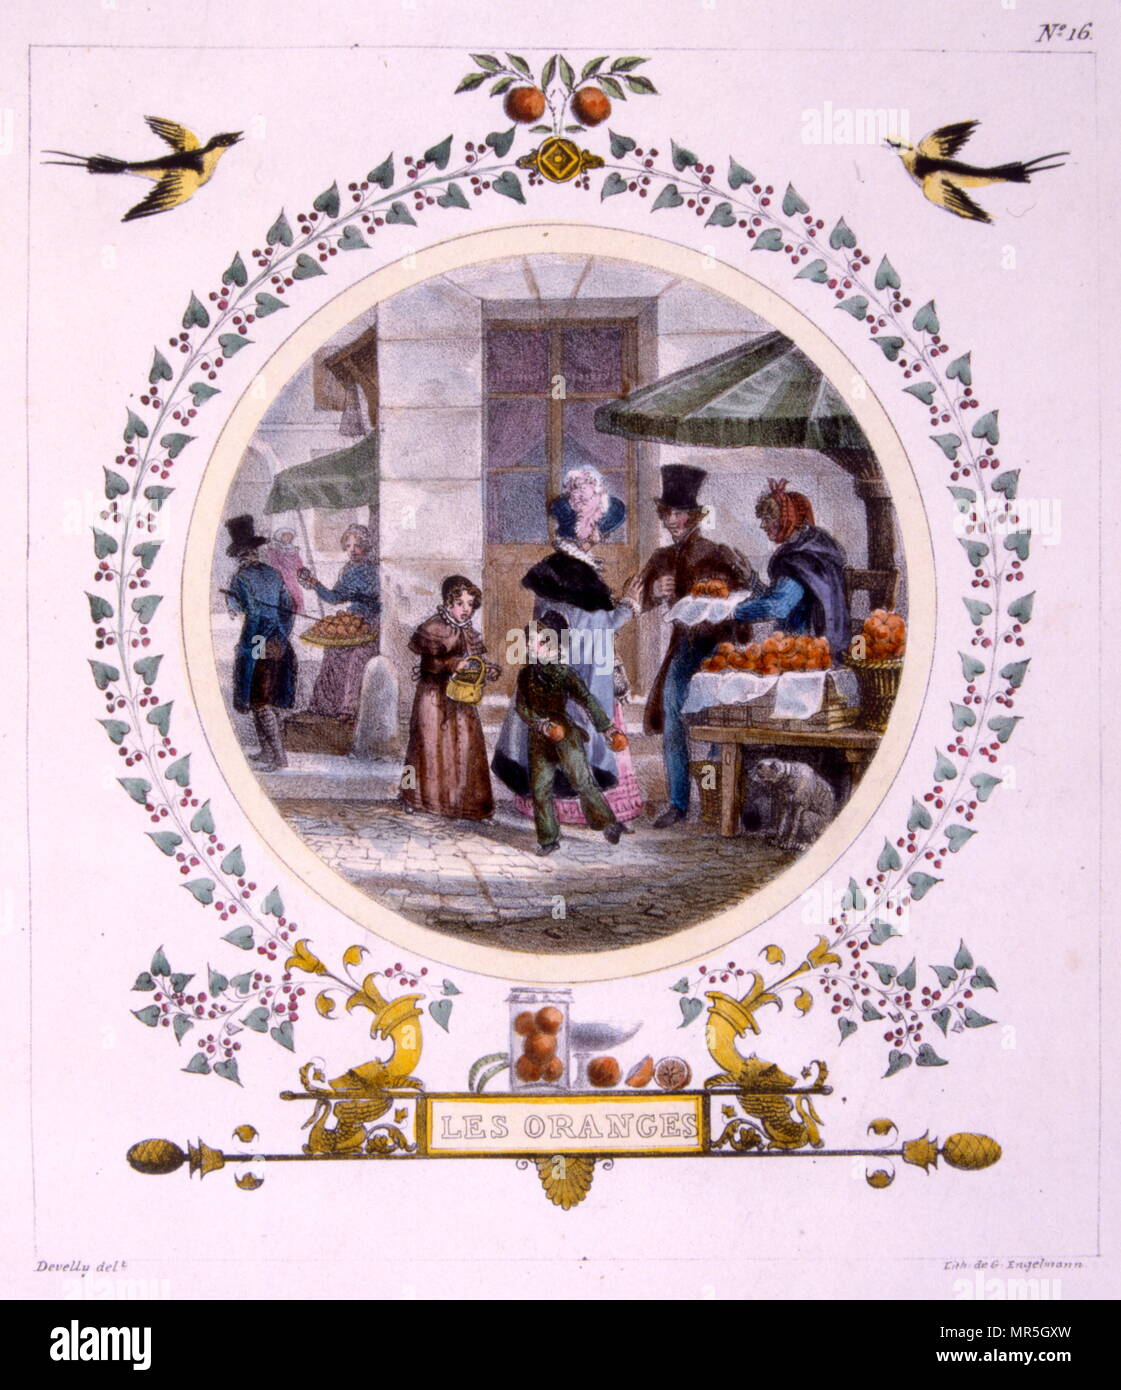 Abbildung 'orangen' 1828, von Jean-Charles Develly (1783 - 1862); französischer Illustrator und Künstler. Stockfoto